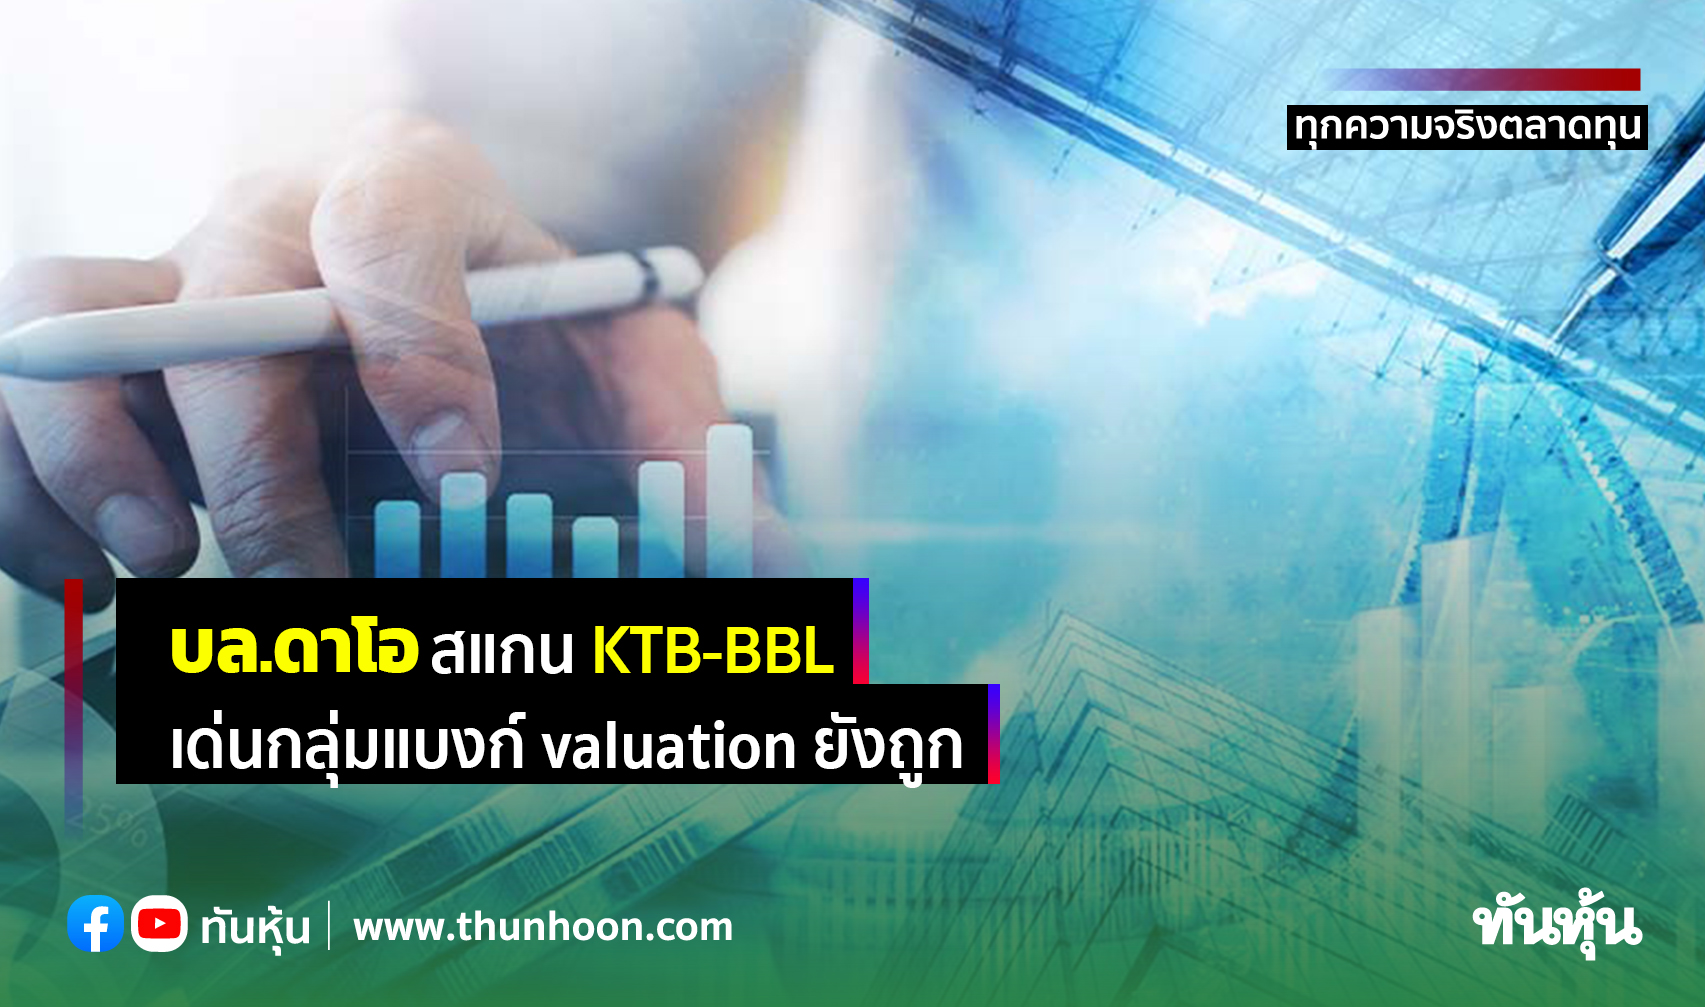 บล.ดาโอ สแกน KTB-BBL เด่นกลุ่มแบงก์ valuation ถูก